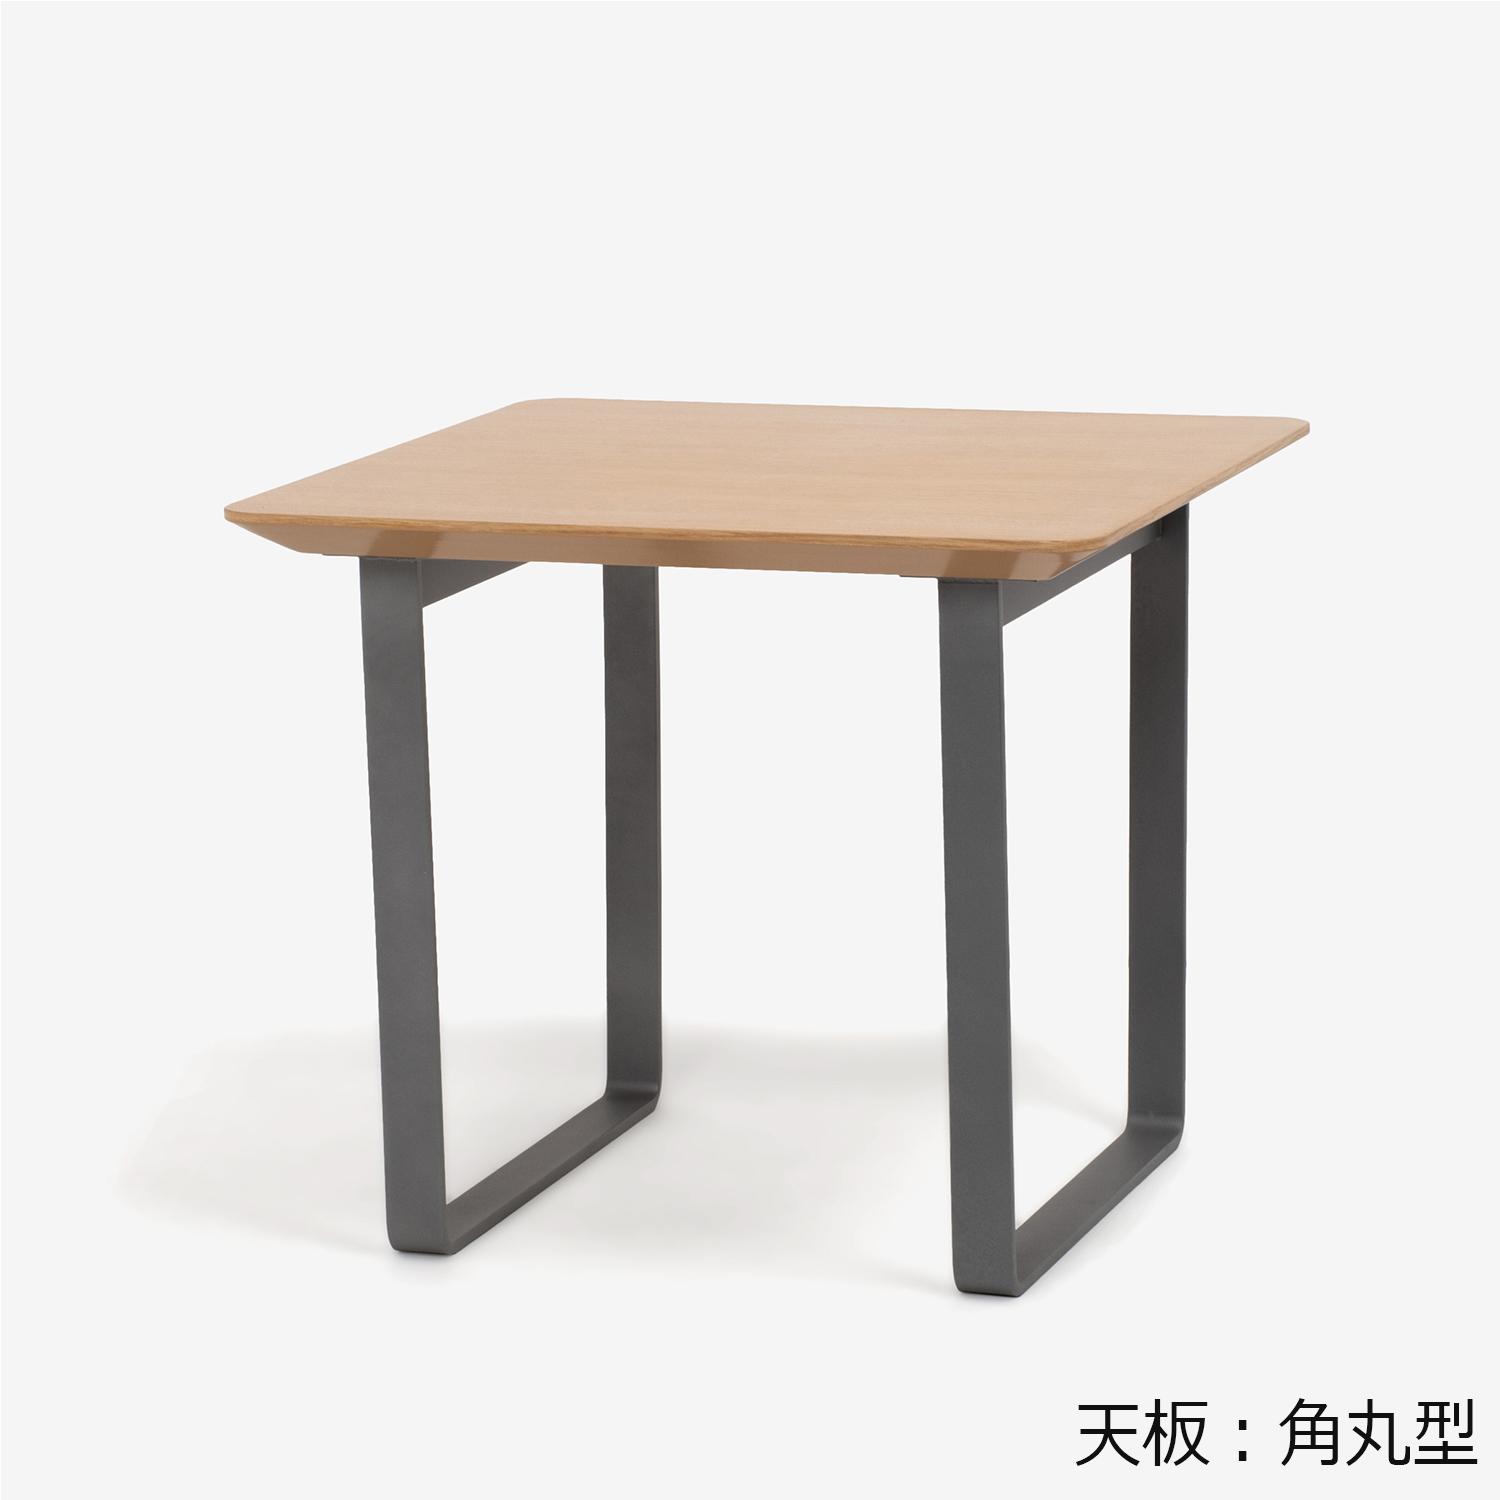 ダイニングテーブル「ジャスト」幅85cm オーク材ホワイトオーク色 金属